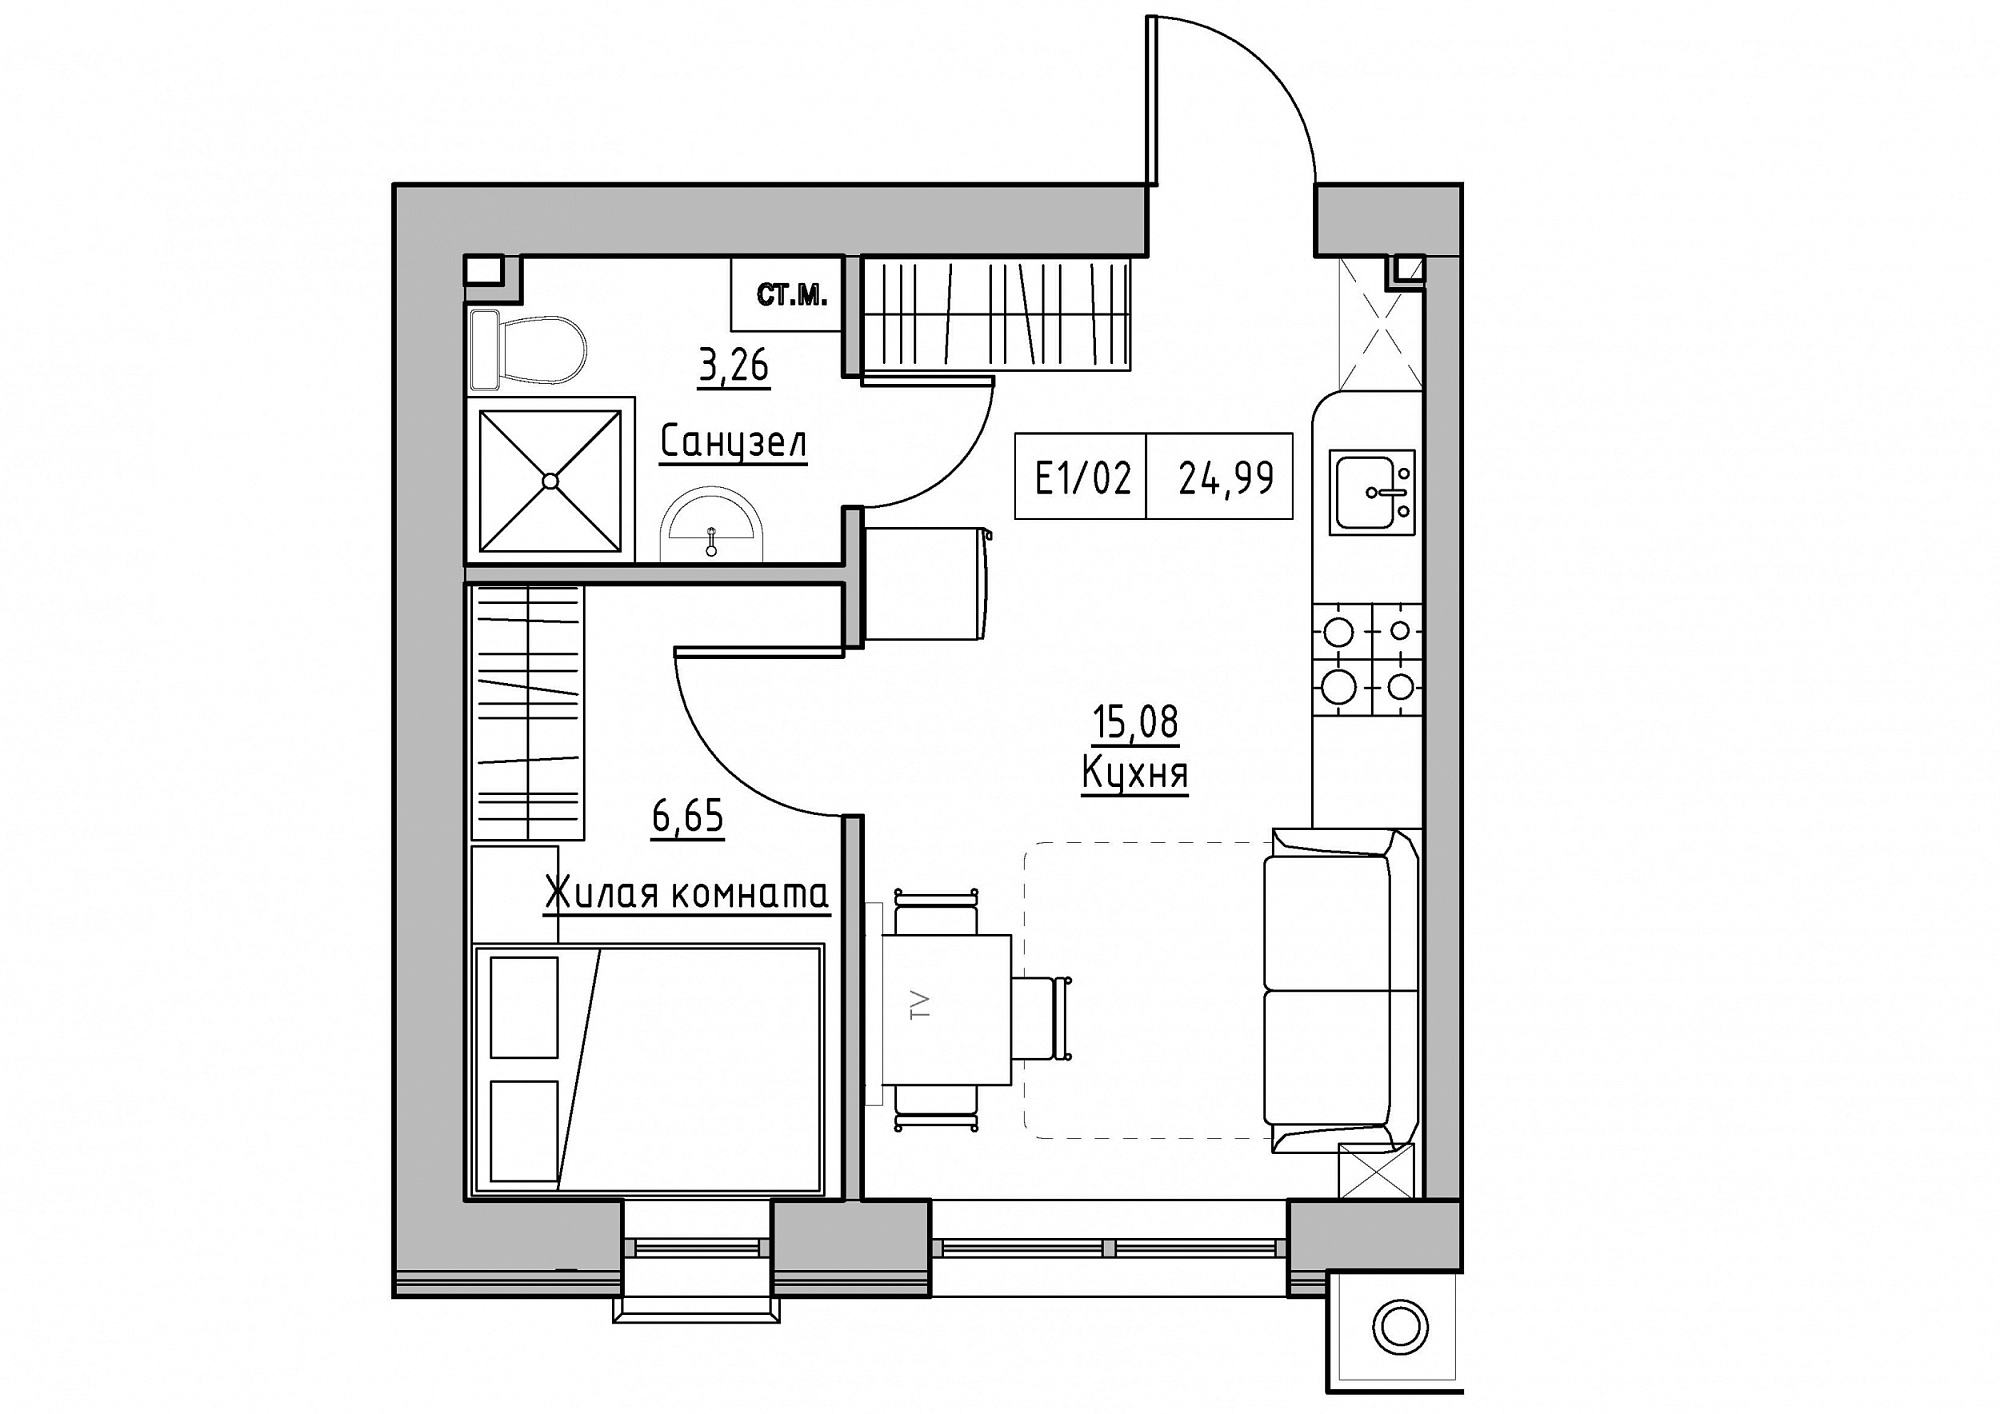 Планування 1-к квартира площею 24.99м2, KS-011-04/0012.